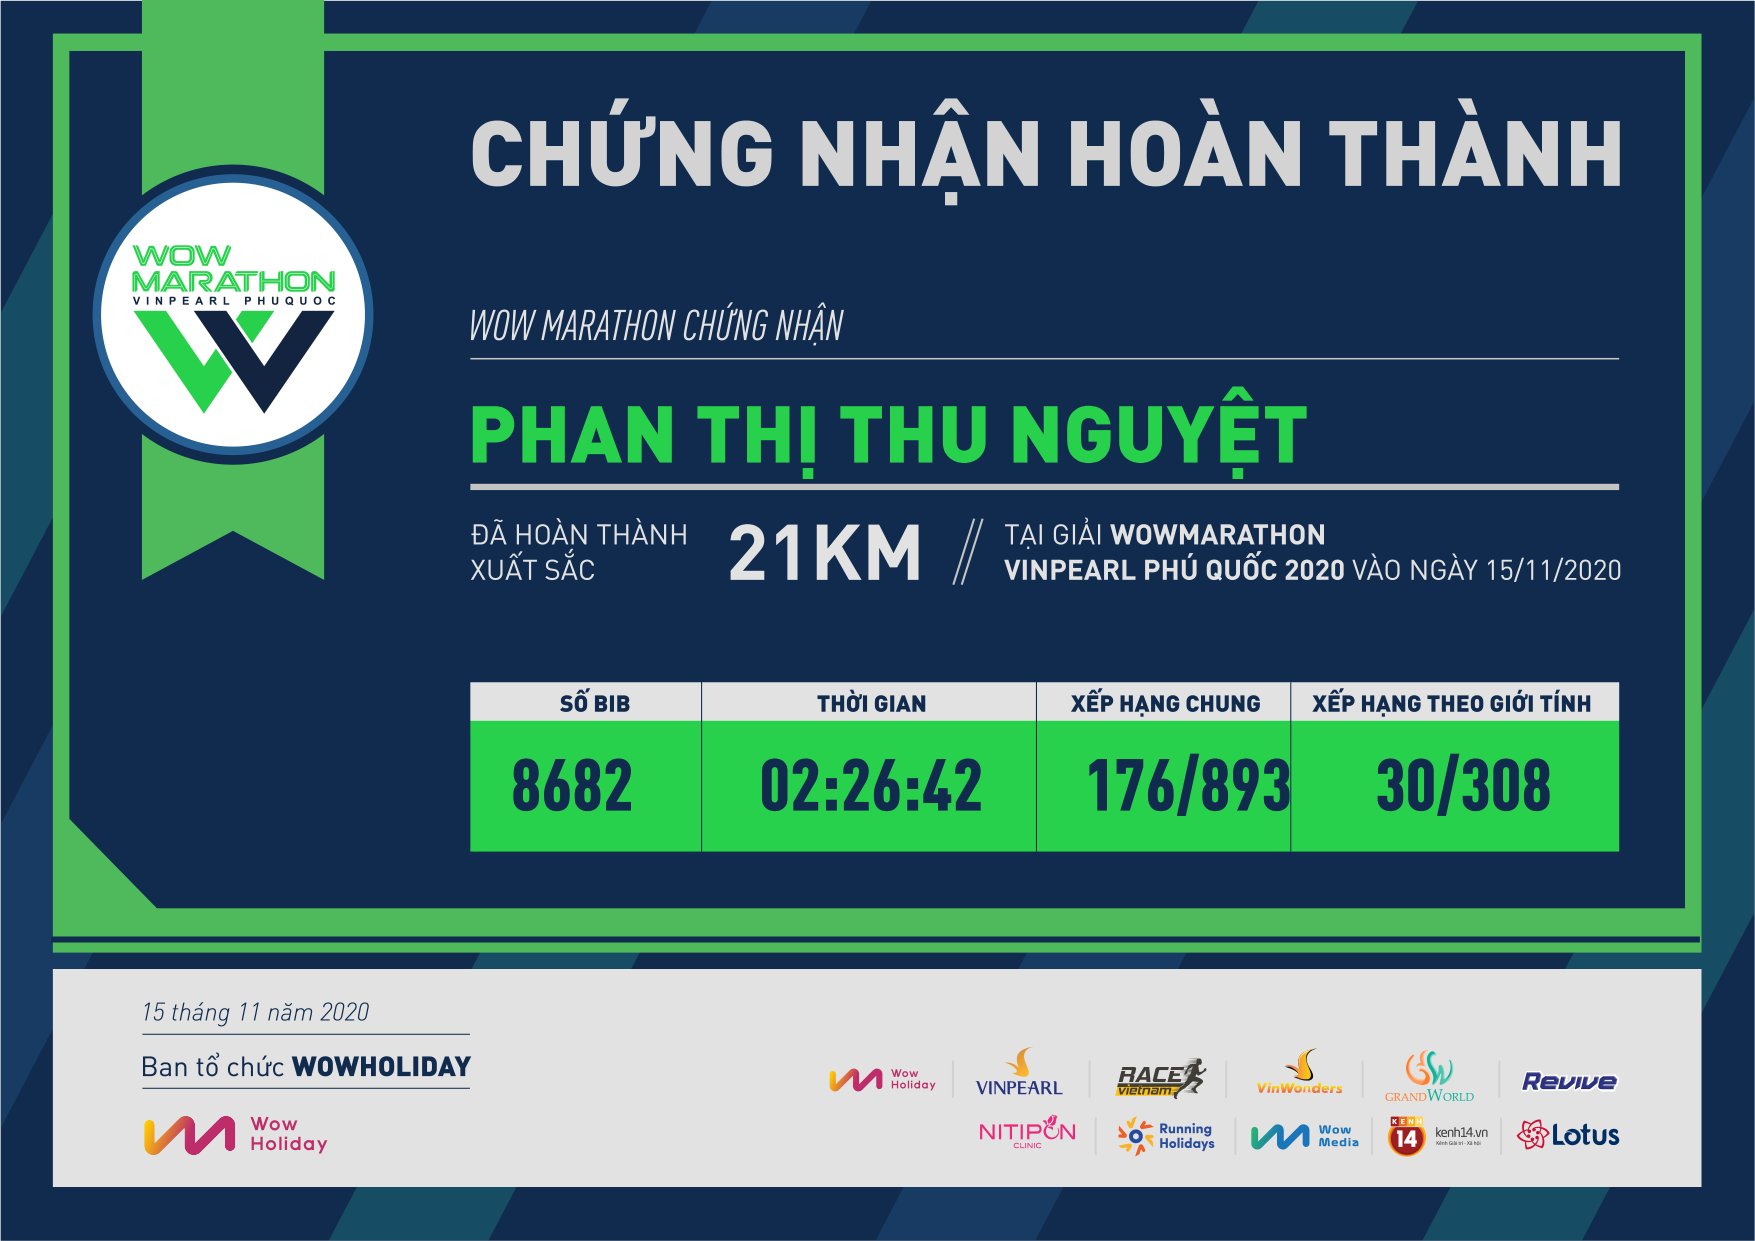 8682 - Phan Thị Thu Nguyệt